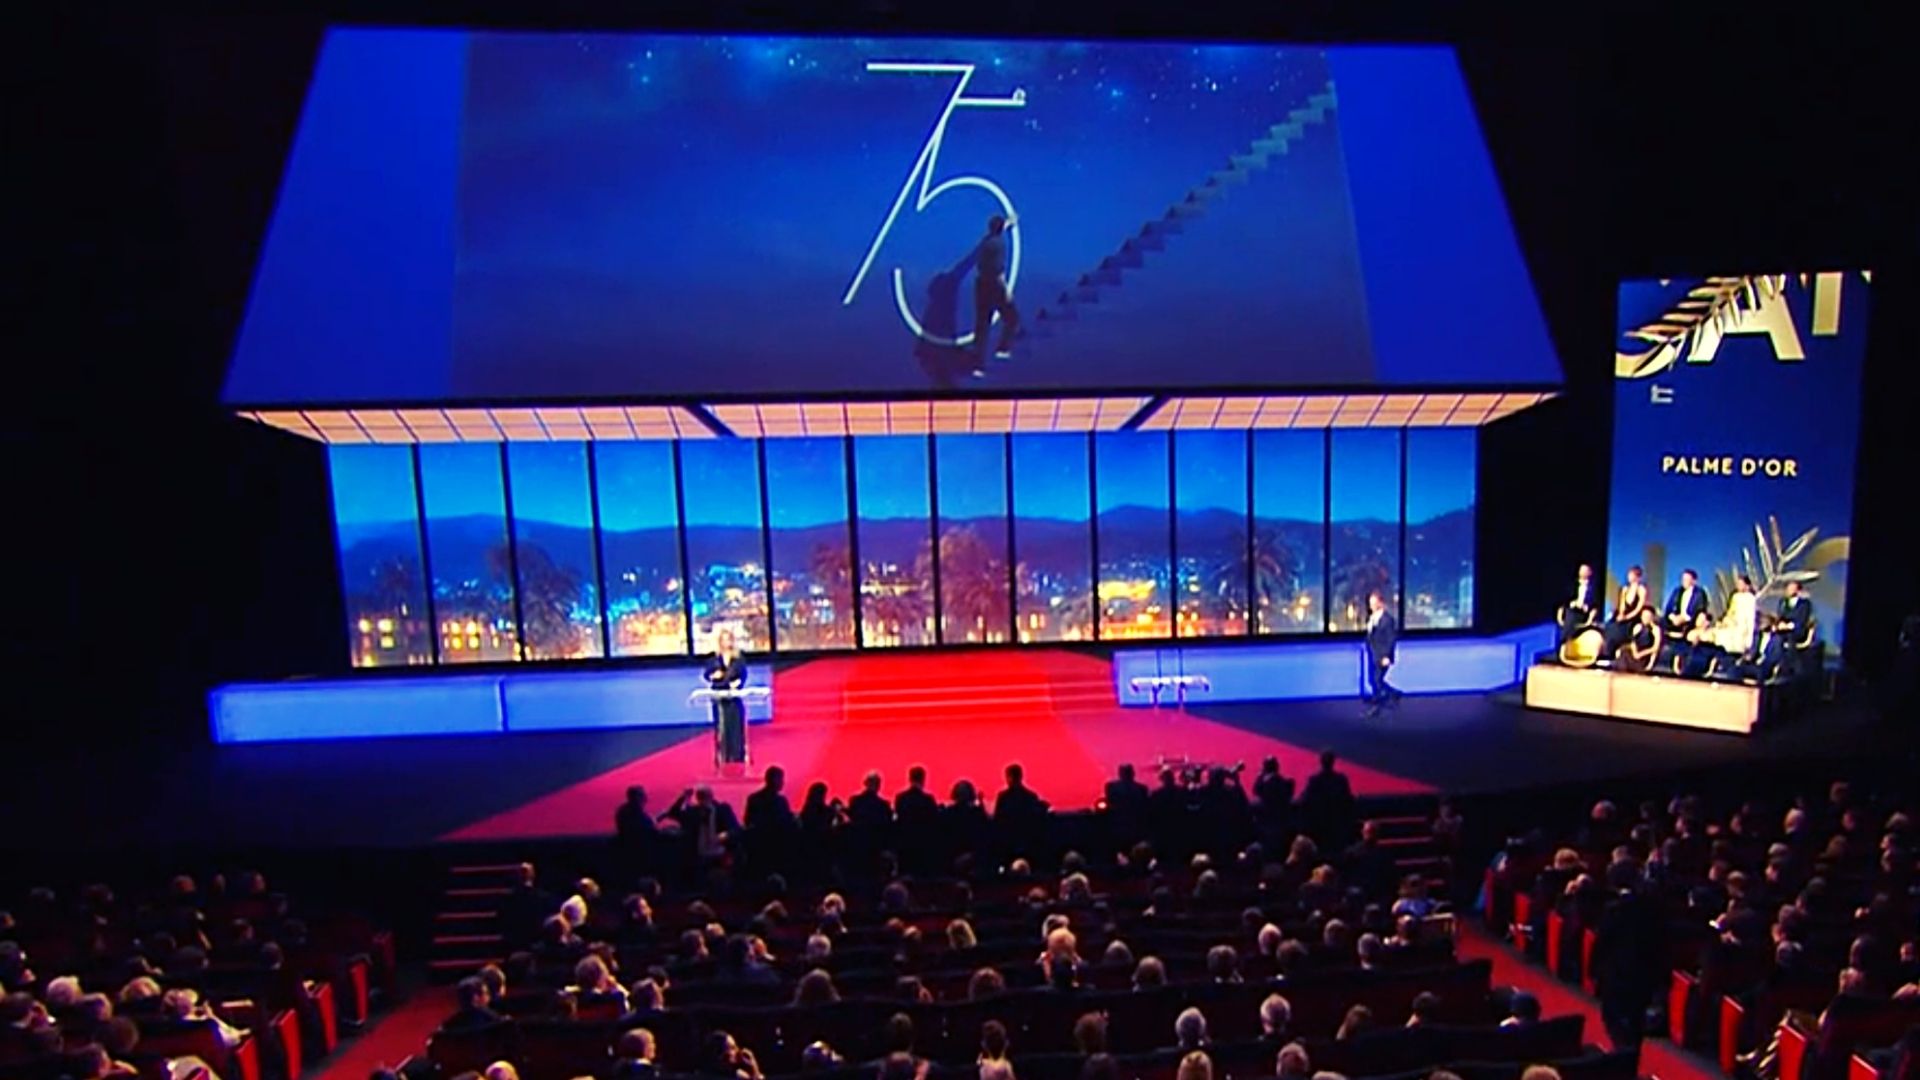 Le Festival de Cannes, un festival de cinéma international